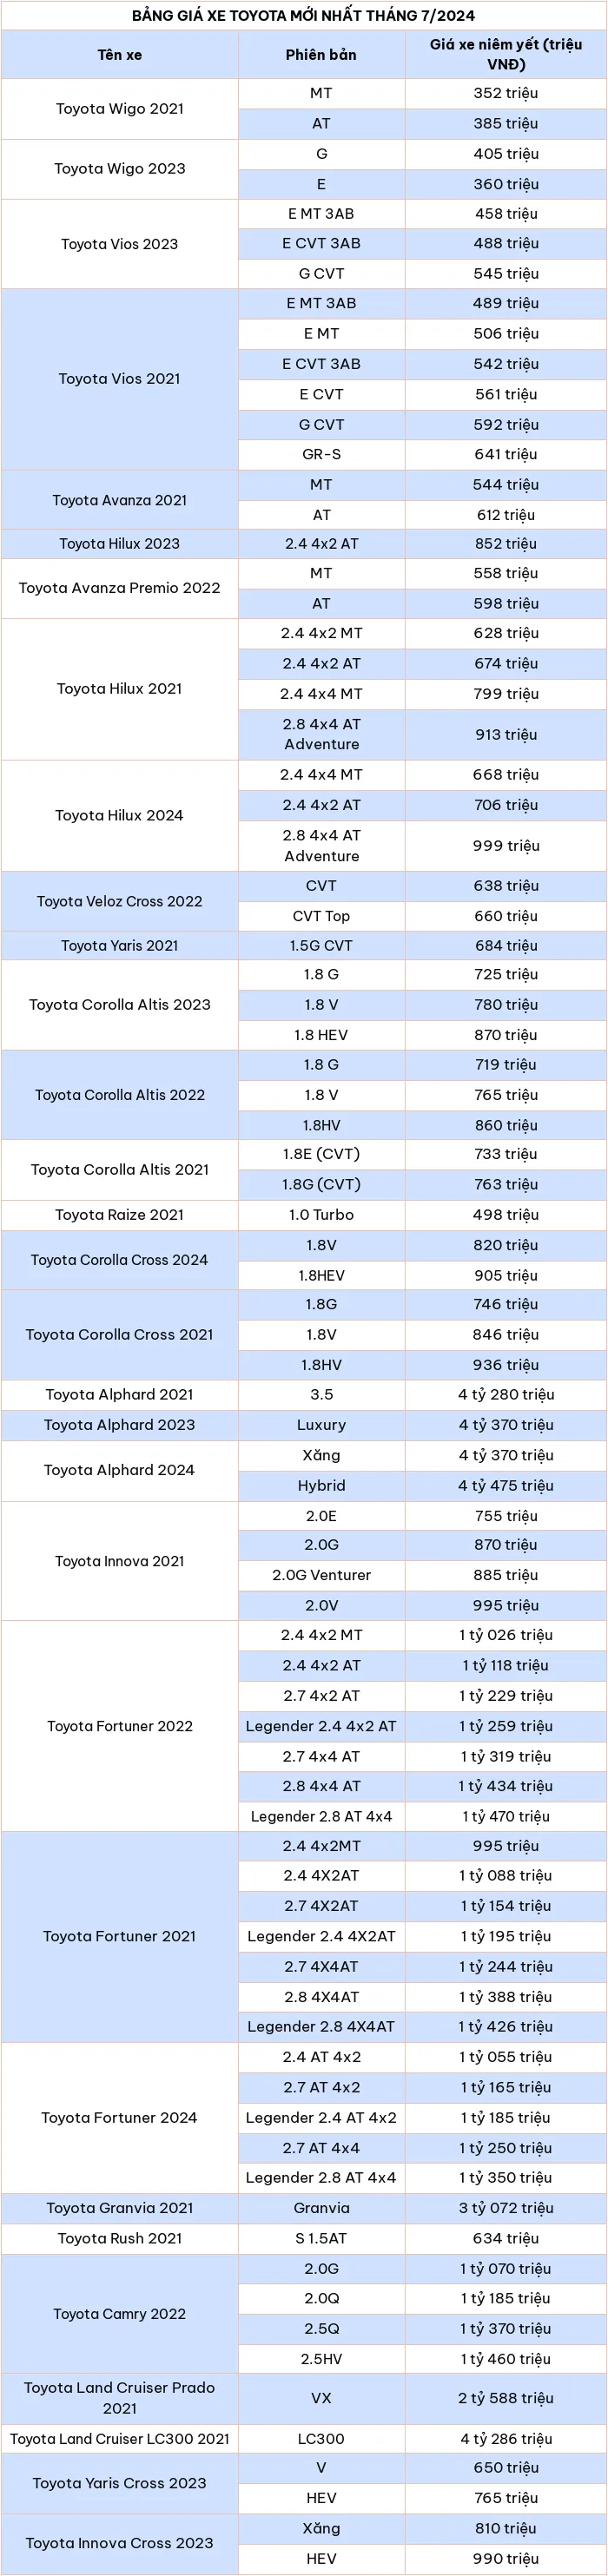 Bảng giá xe ô tô Toyota mới nhất tháng 7/2024